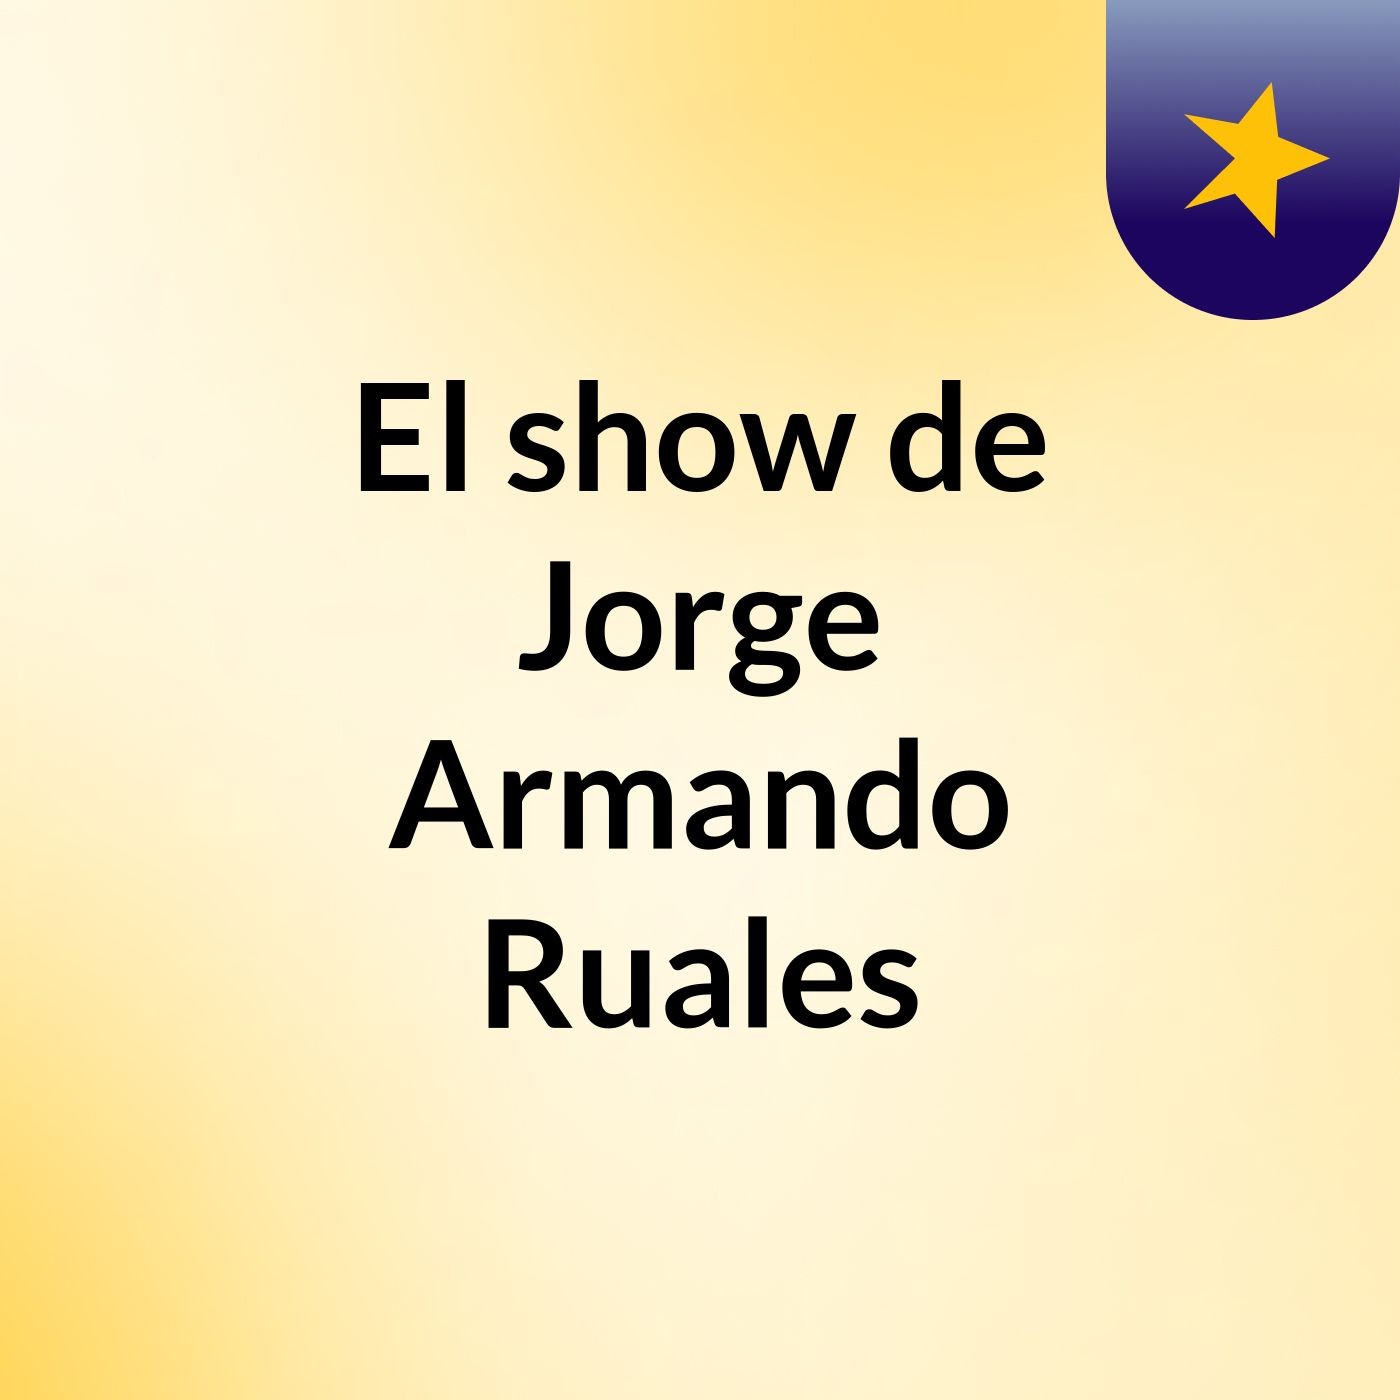 El show de Jorge Armando Ruales